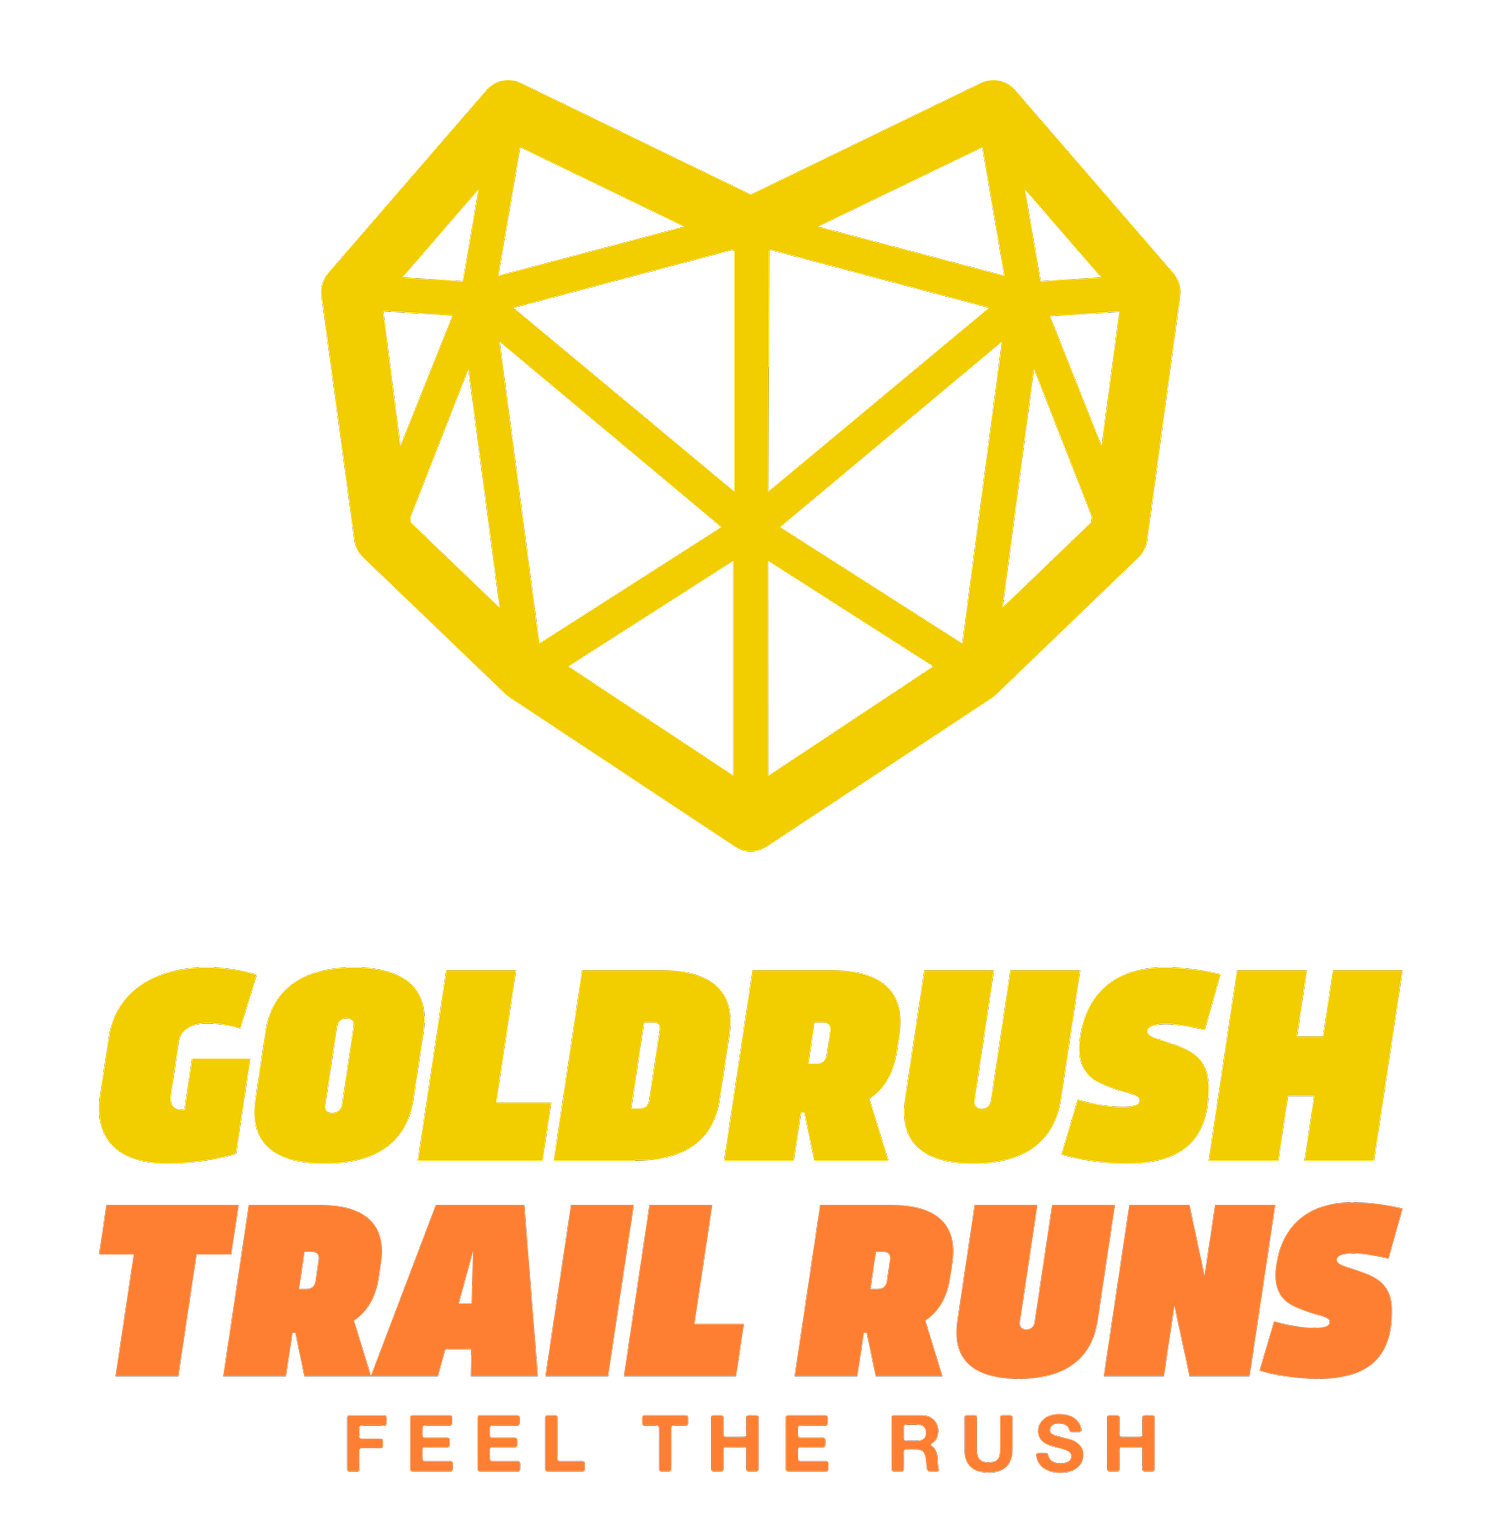 Goldrush Trail Runs